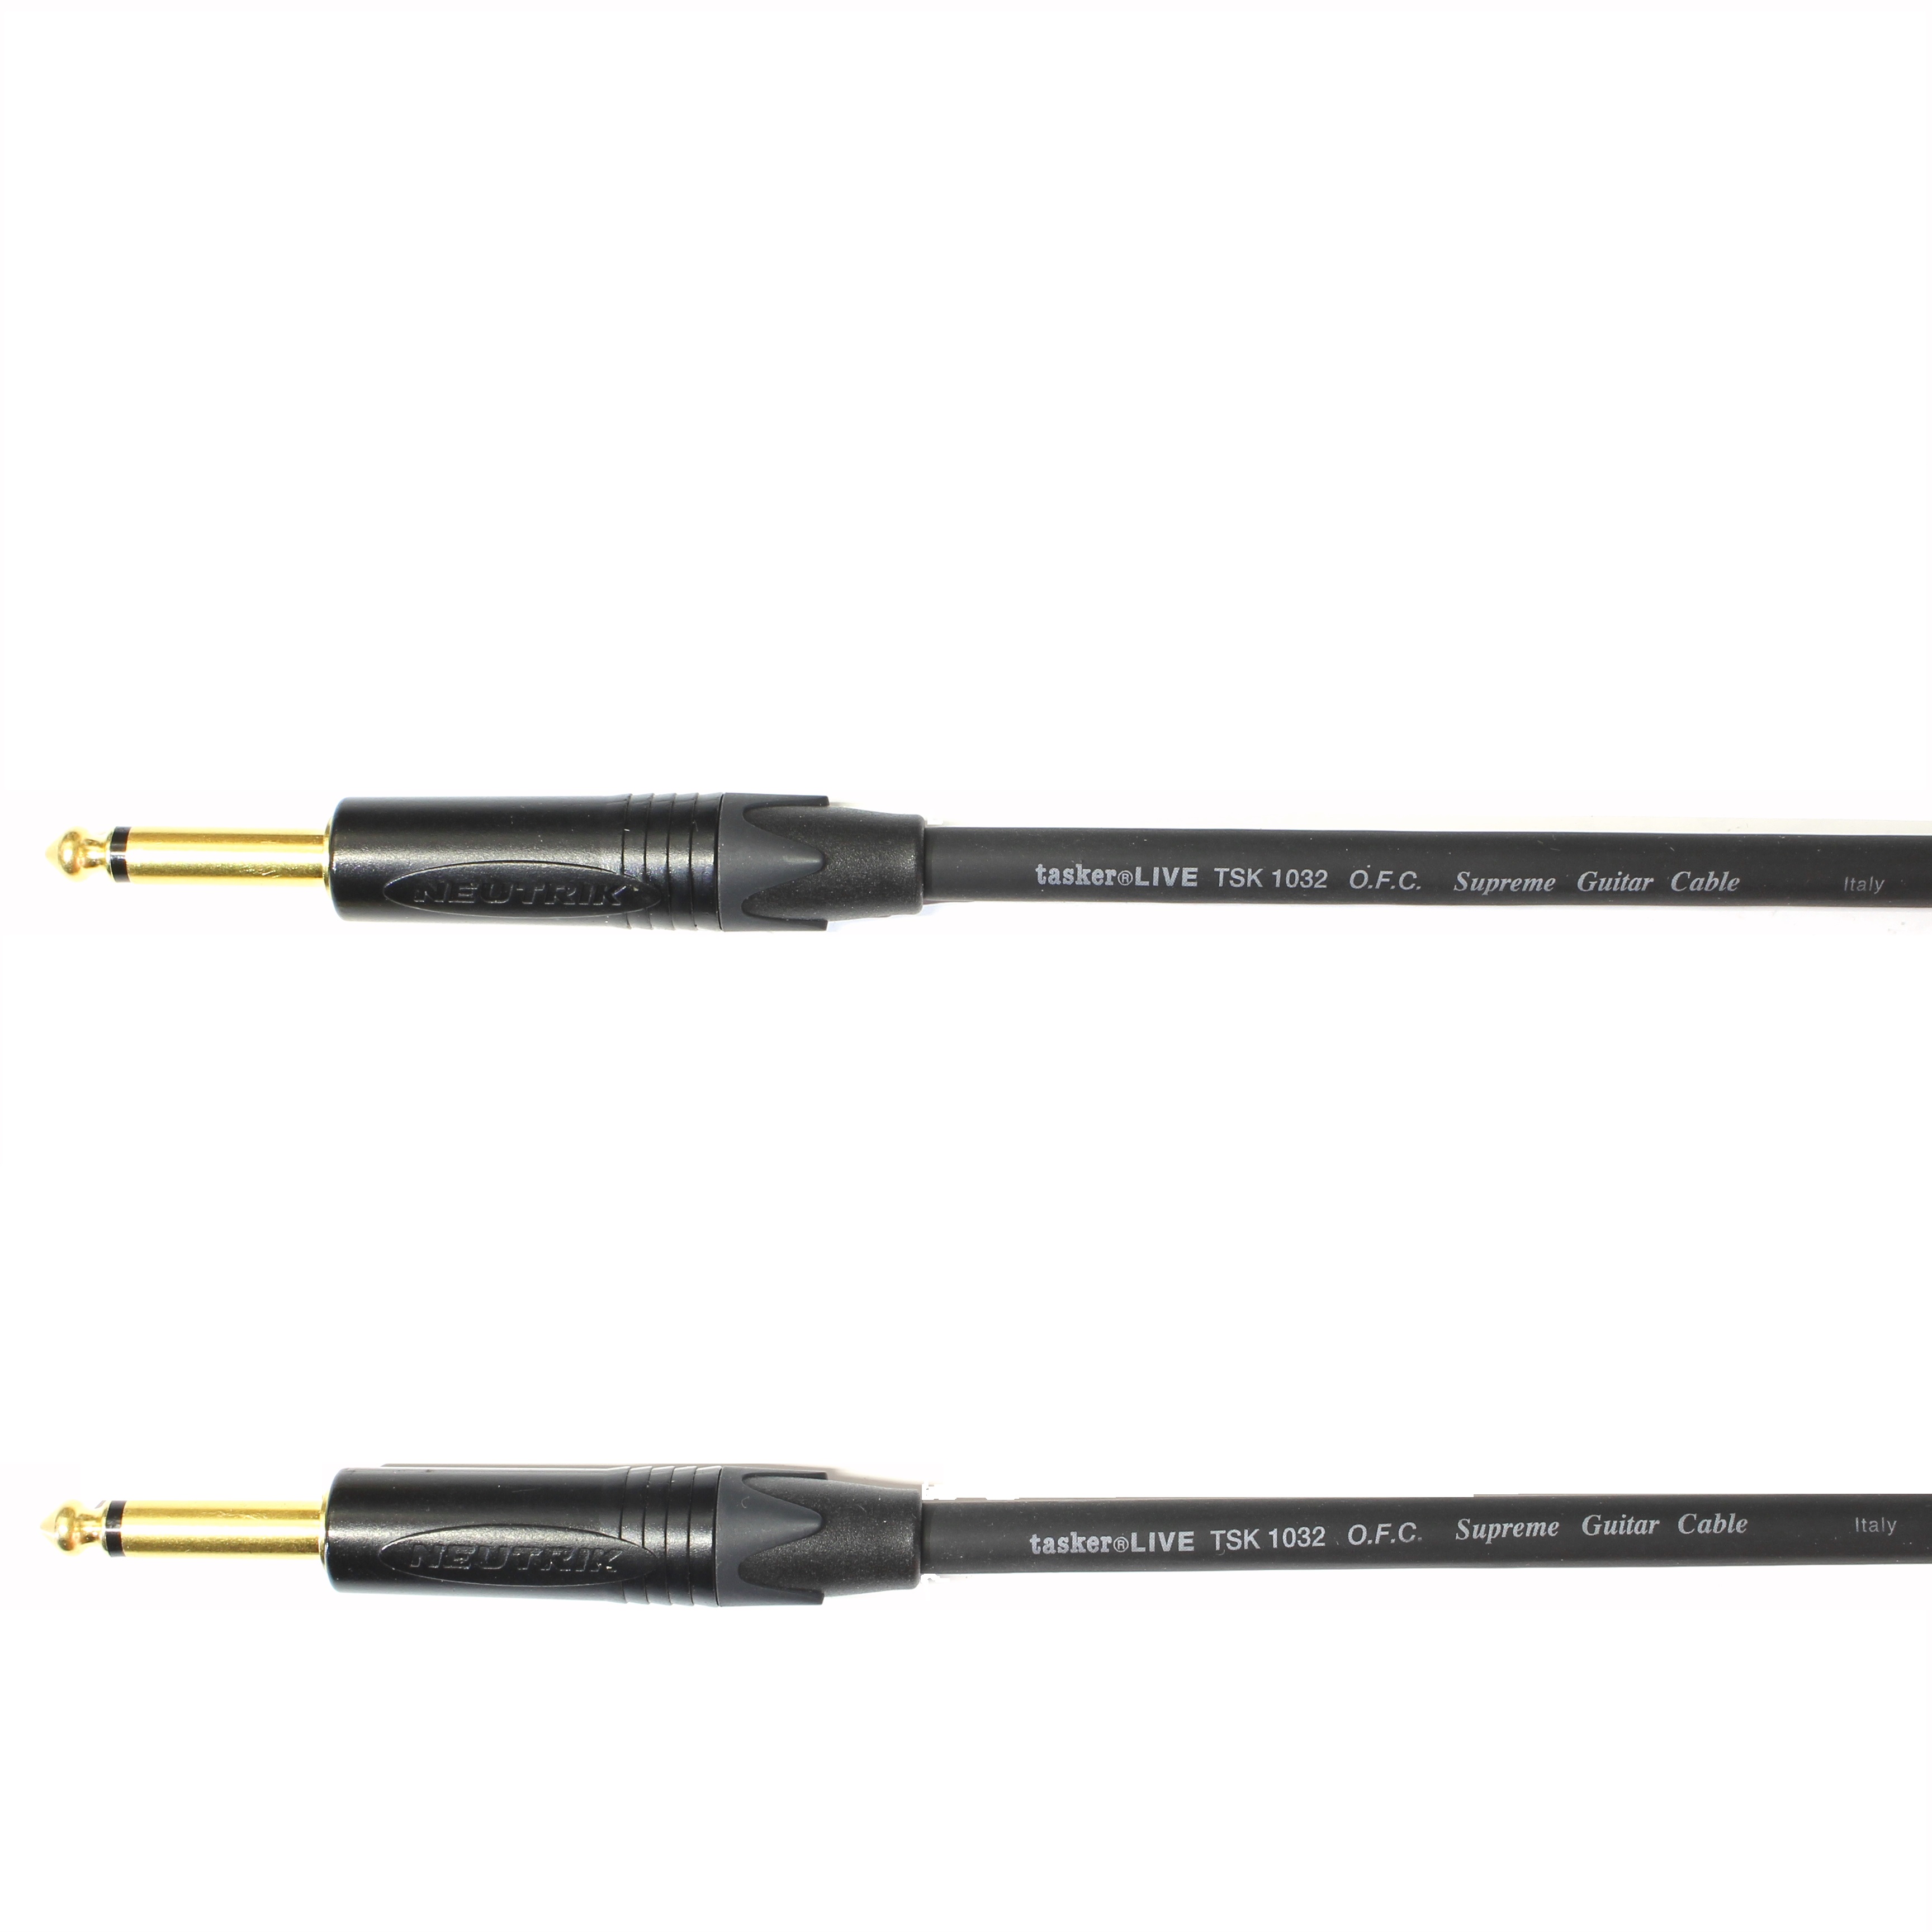 Kytarový kabel Jack 6,3 mono přímý/ Jack 6,3 mono přímý, 9 m, TSK1032